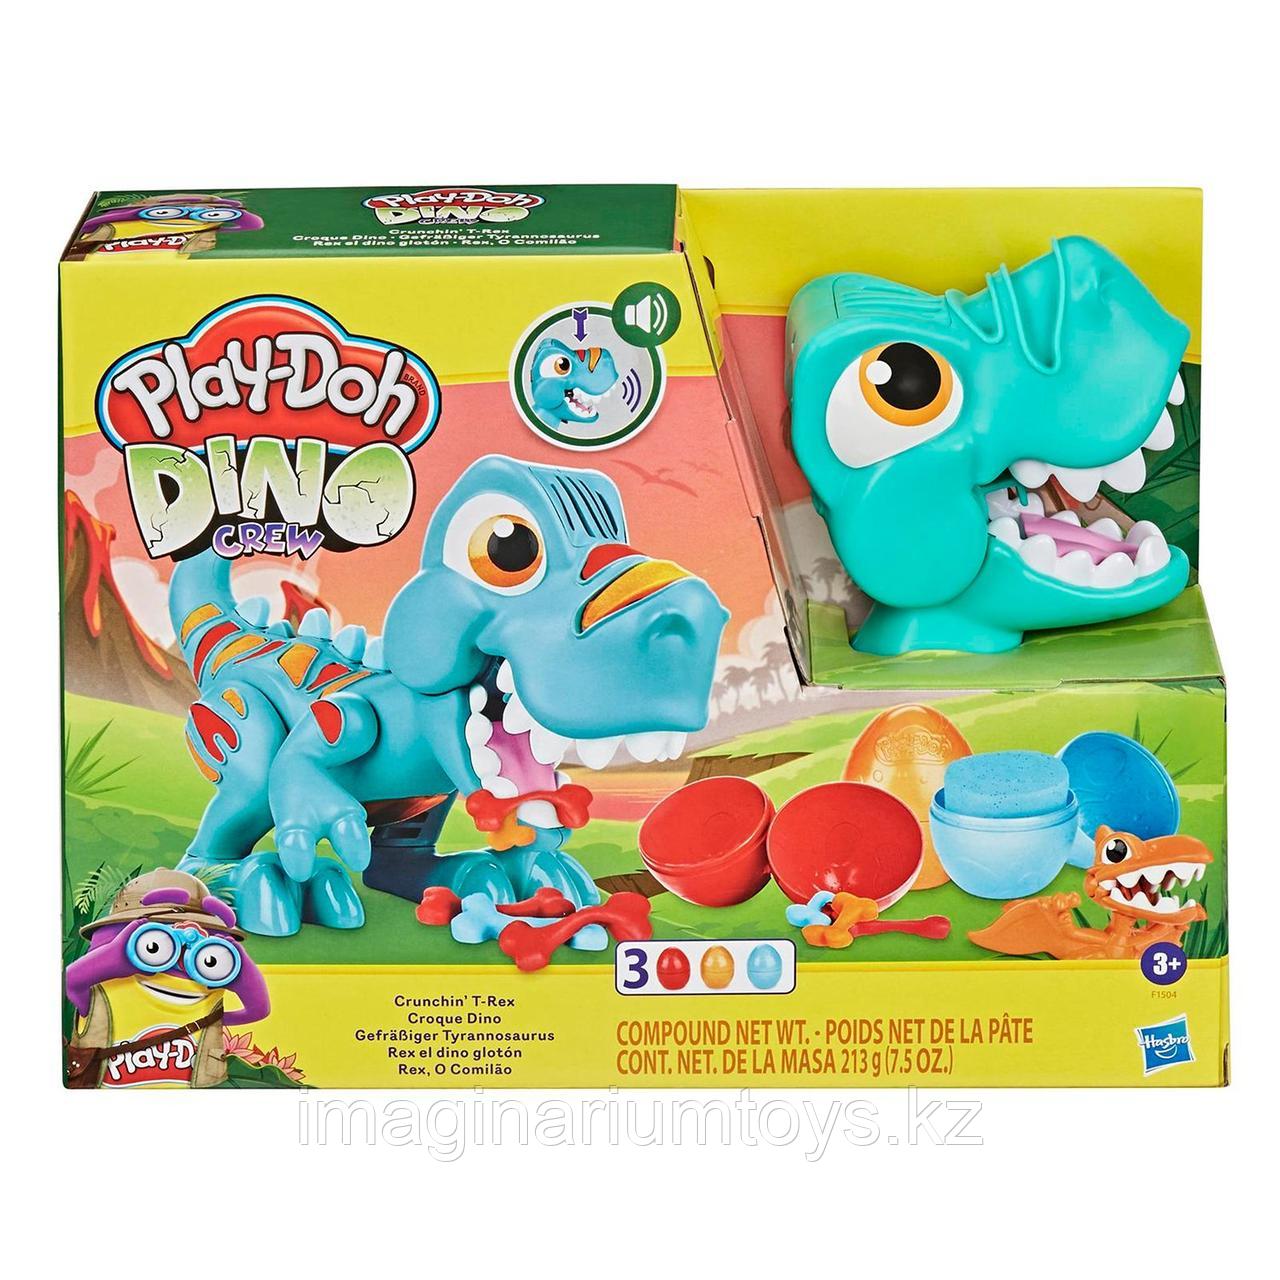 Play-Doh Плейдо игровой набор пластилина «Голодный Динозавр Ти-Рекс», фото 1